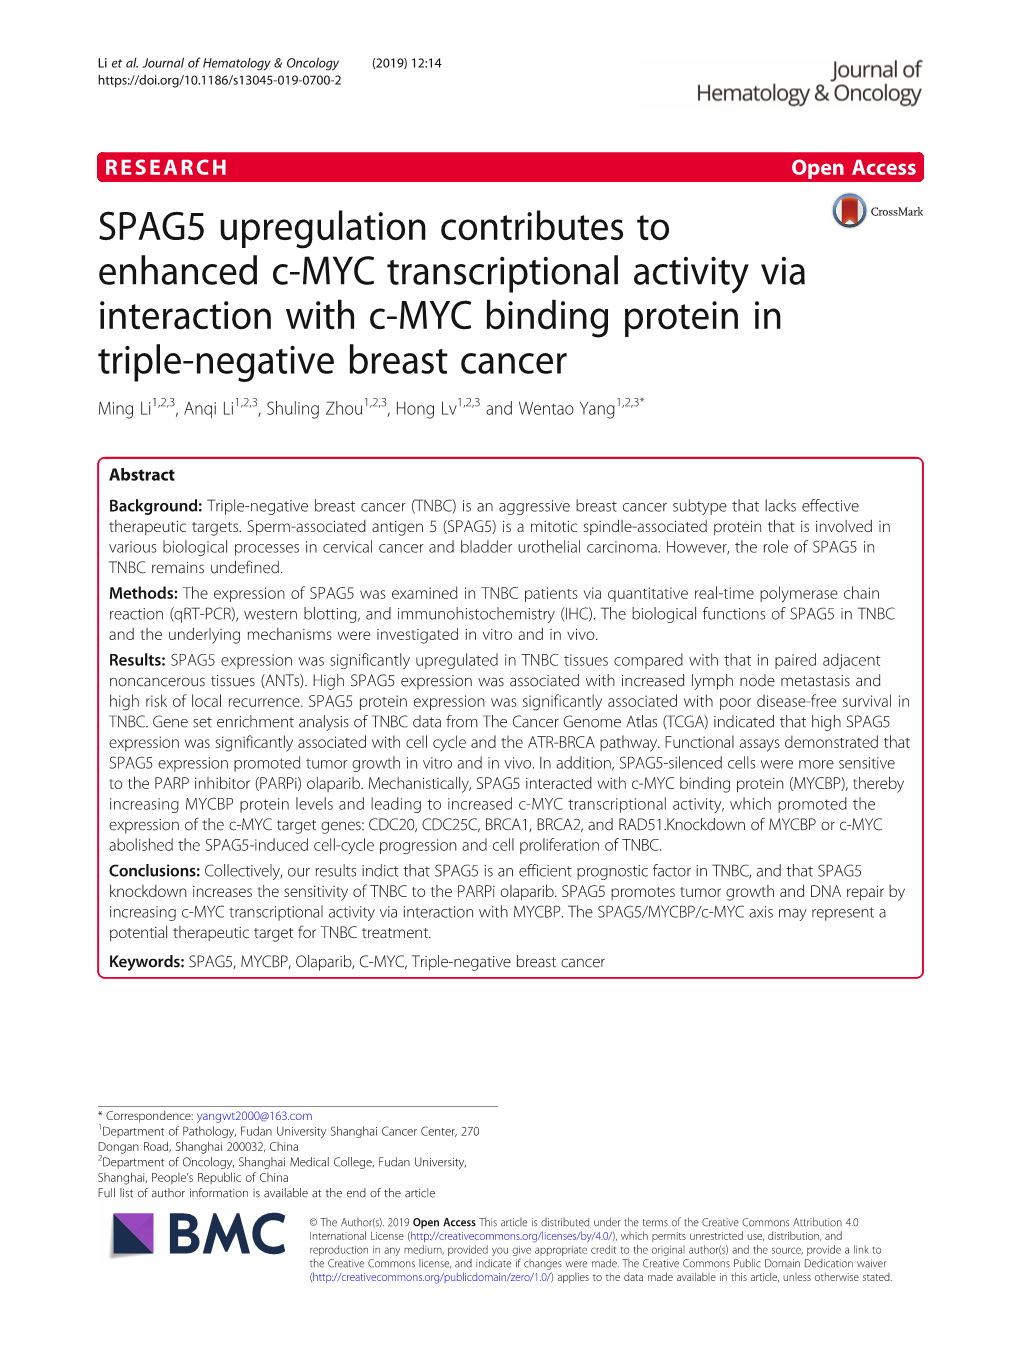 SPAG5 Upregulation Contributes to Enhanced C-MYC Transcriptional